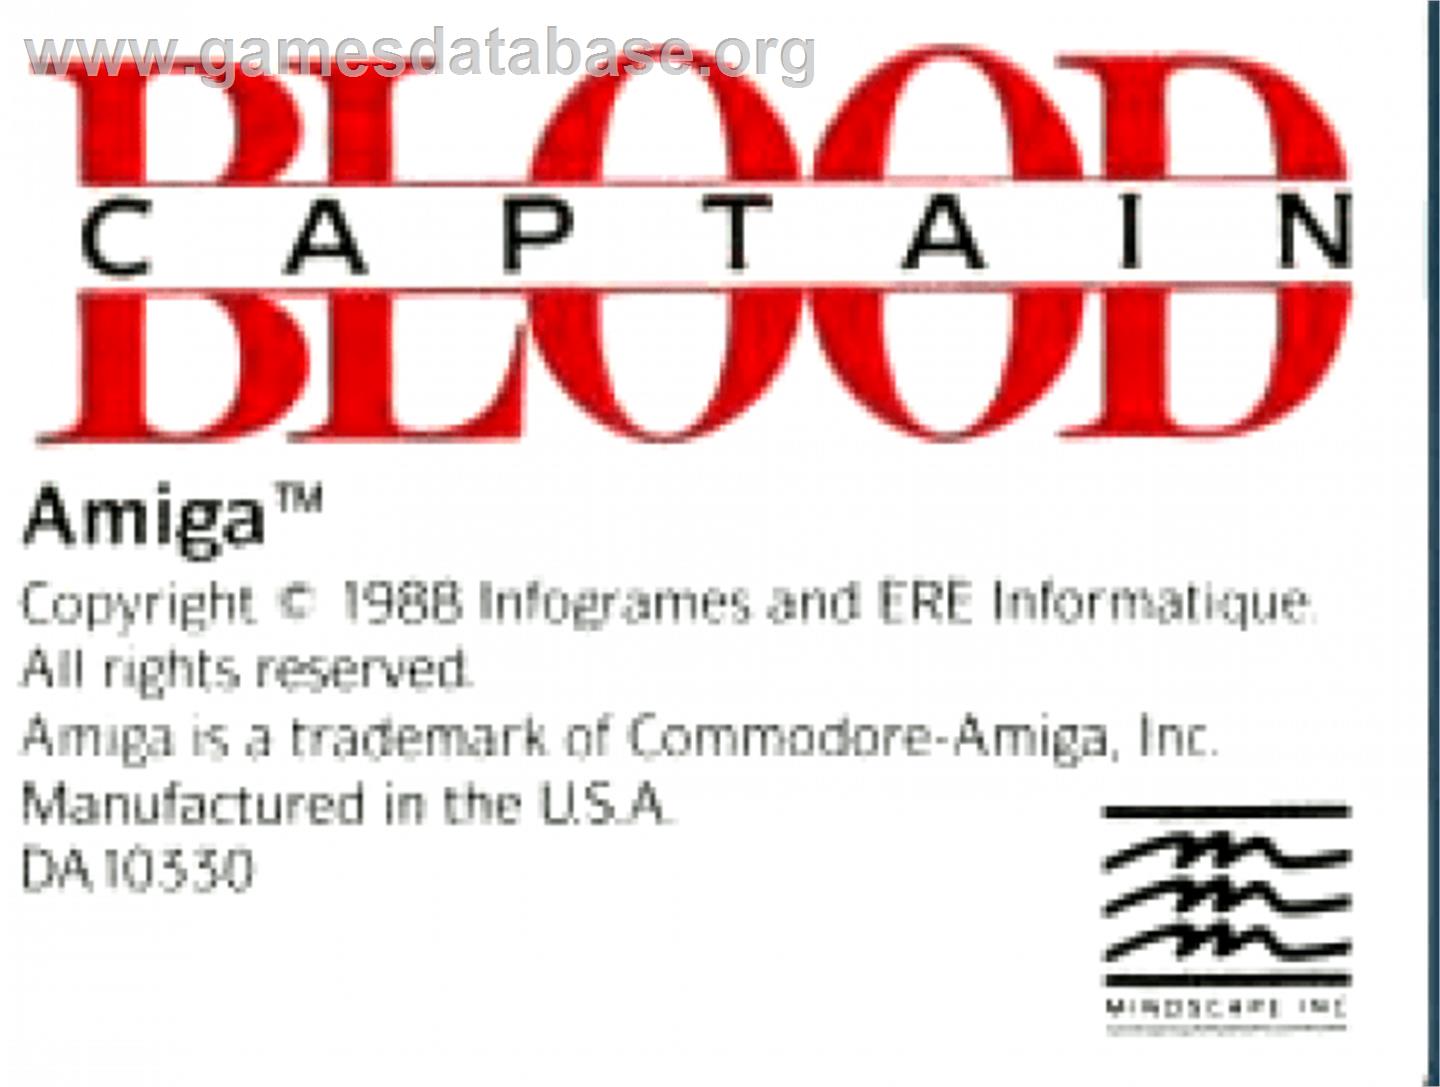 Captain Blood - Commodore Amiga - Artwork - Cartridge Top